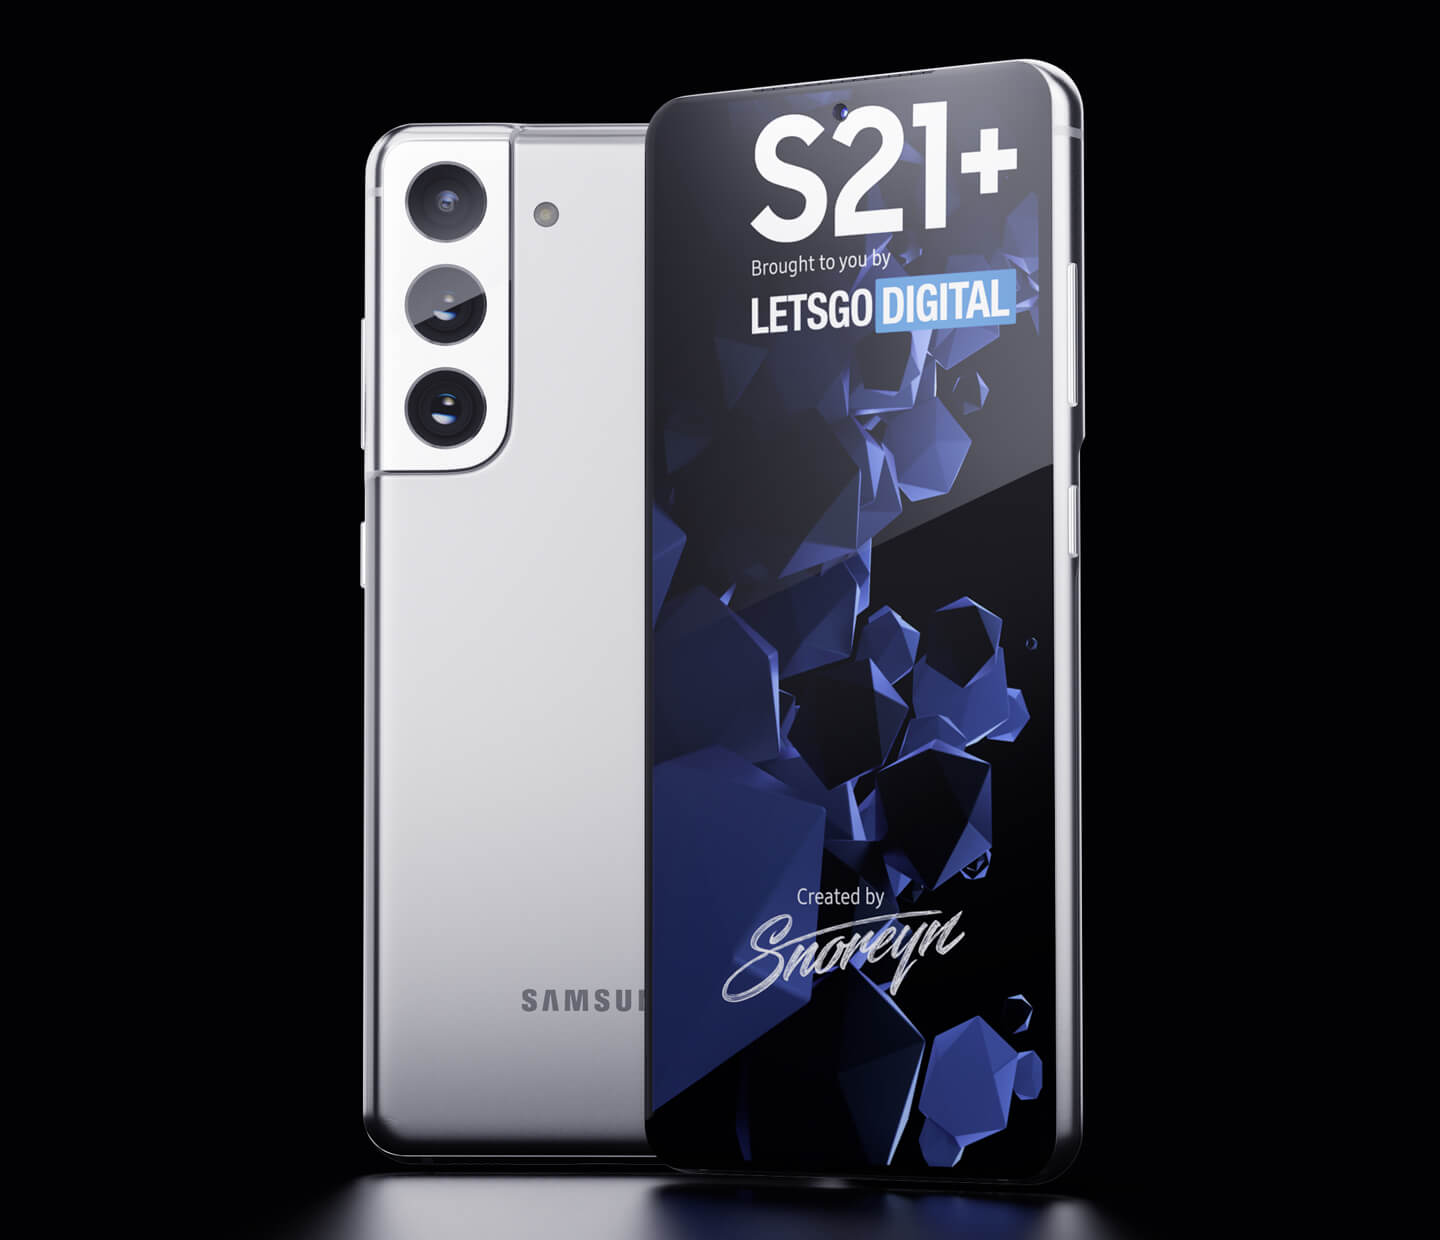 Samsung smartphone S21 Plus